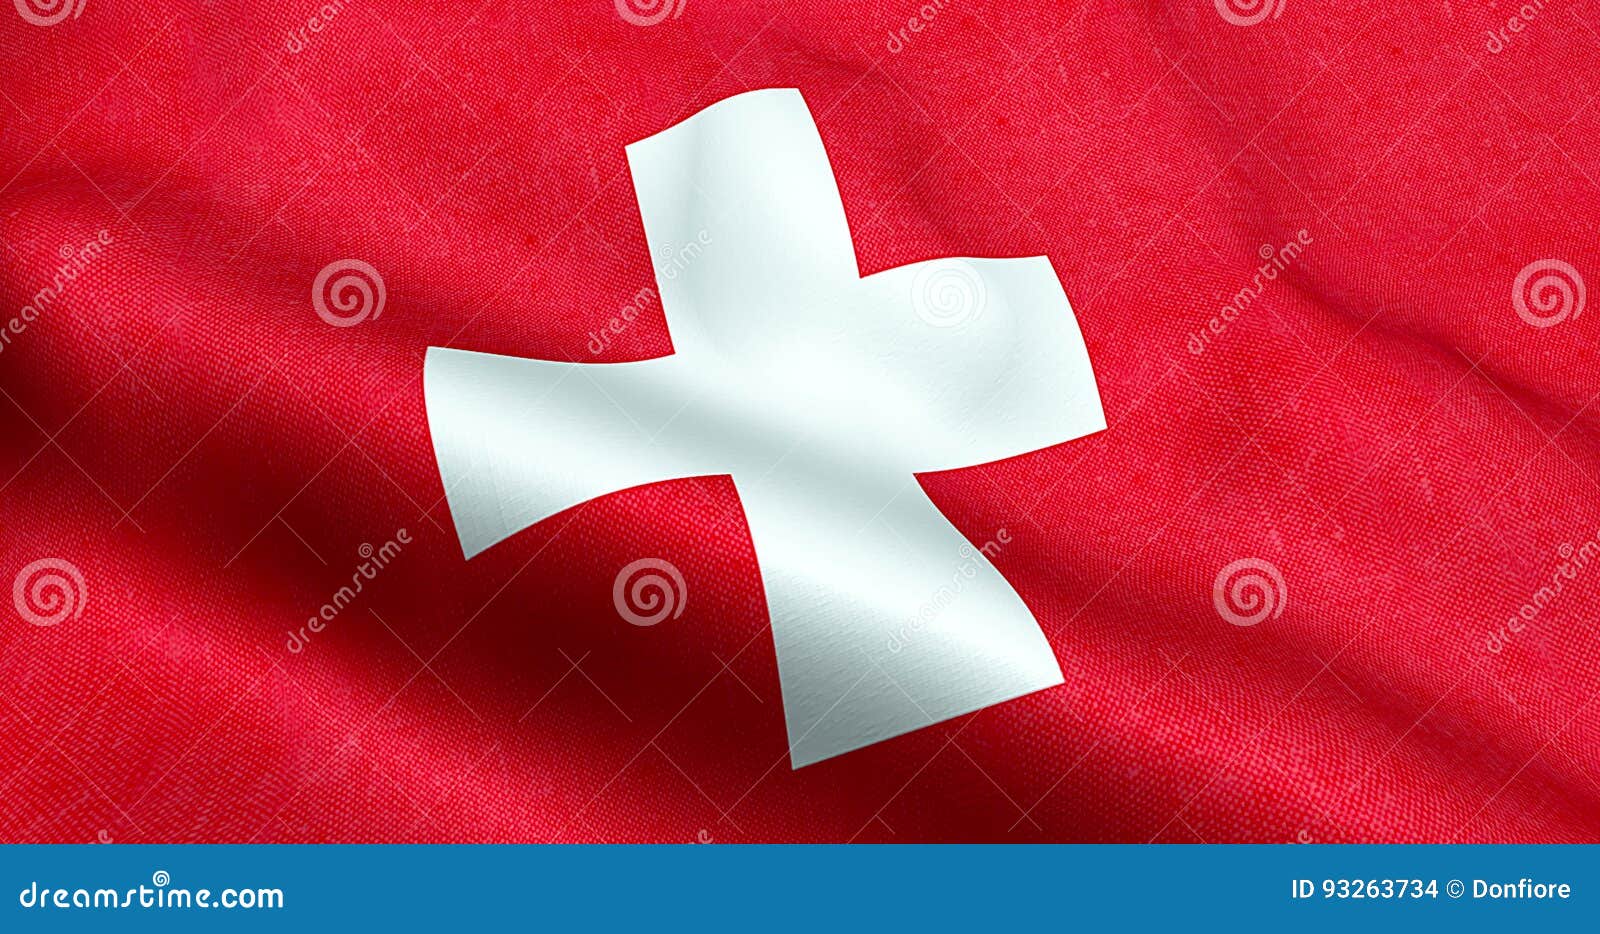 Cờ Thụy Sĩ vẫy trên nền đỏ đầy sức sống, tạo nên một phong cảnh đẹp và ấn tượng. Hình ảnh này sẽ giúp bạn hiểu rõ hơn về tinh thần quyết tâm của người dân Thụy Sĩ, và niềm tự hào của họ về đất nước và cờ đỏ trắng này.